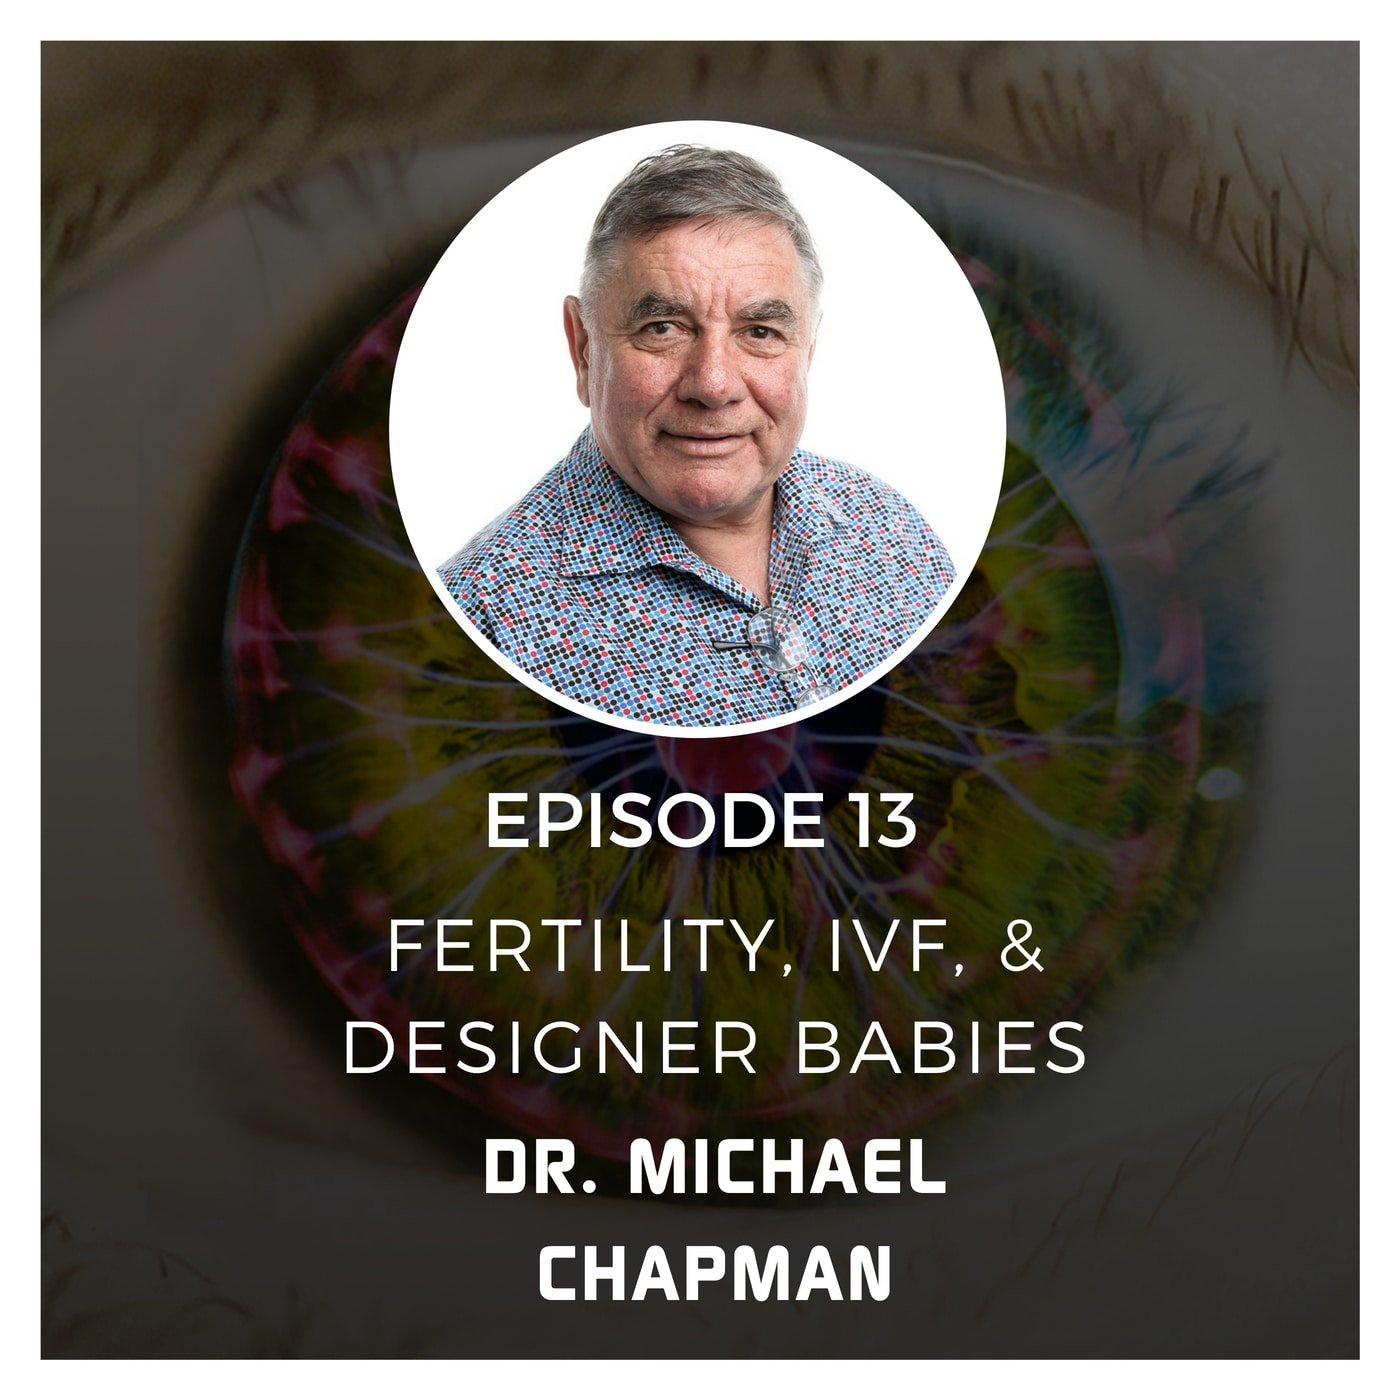 Fertility, IVF, & Designer Babies with Dr. Michael Chapman - Episode 13